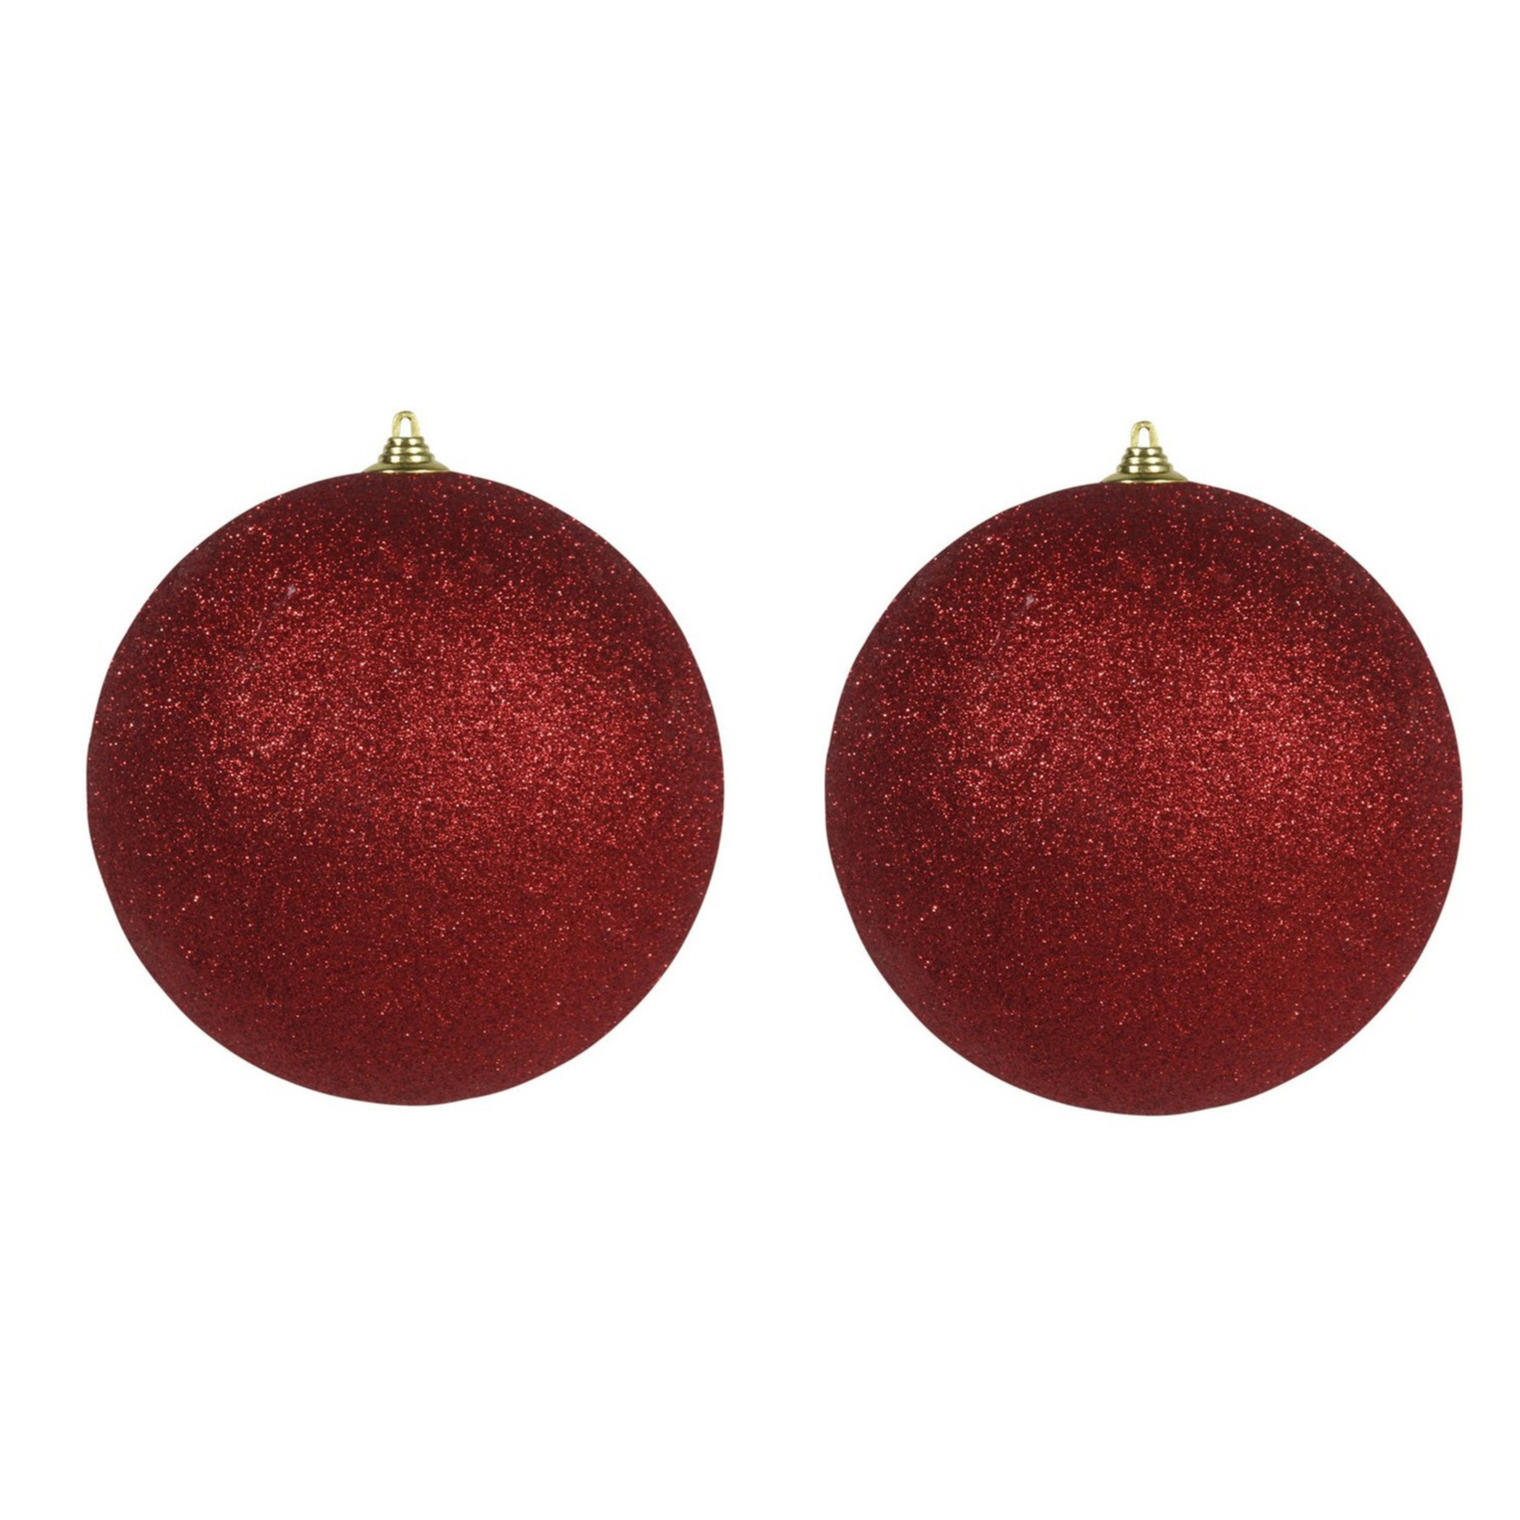 2x Rode grote kerstballen met glitter kunststof 18 cm